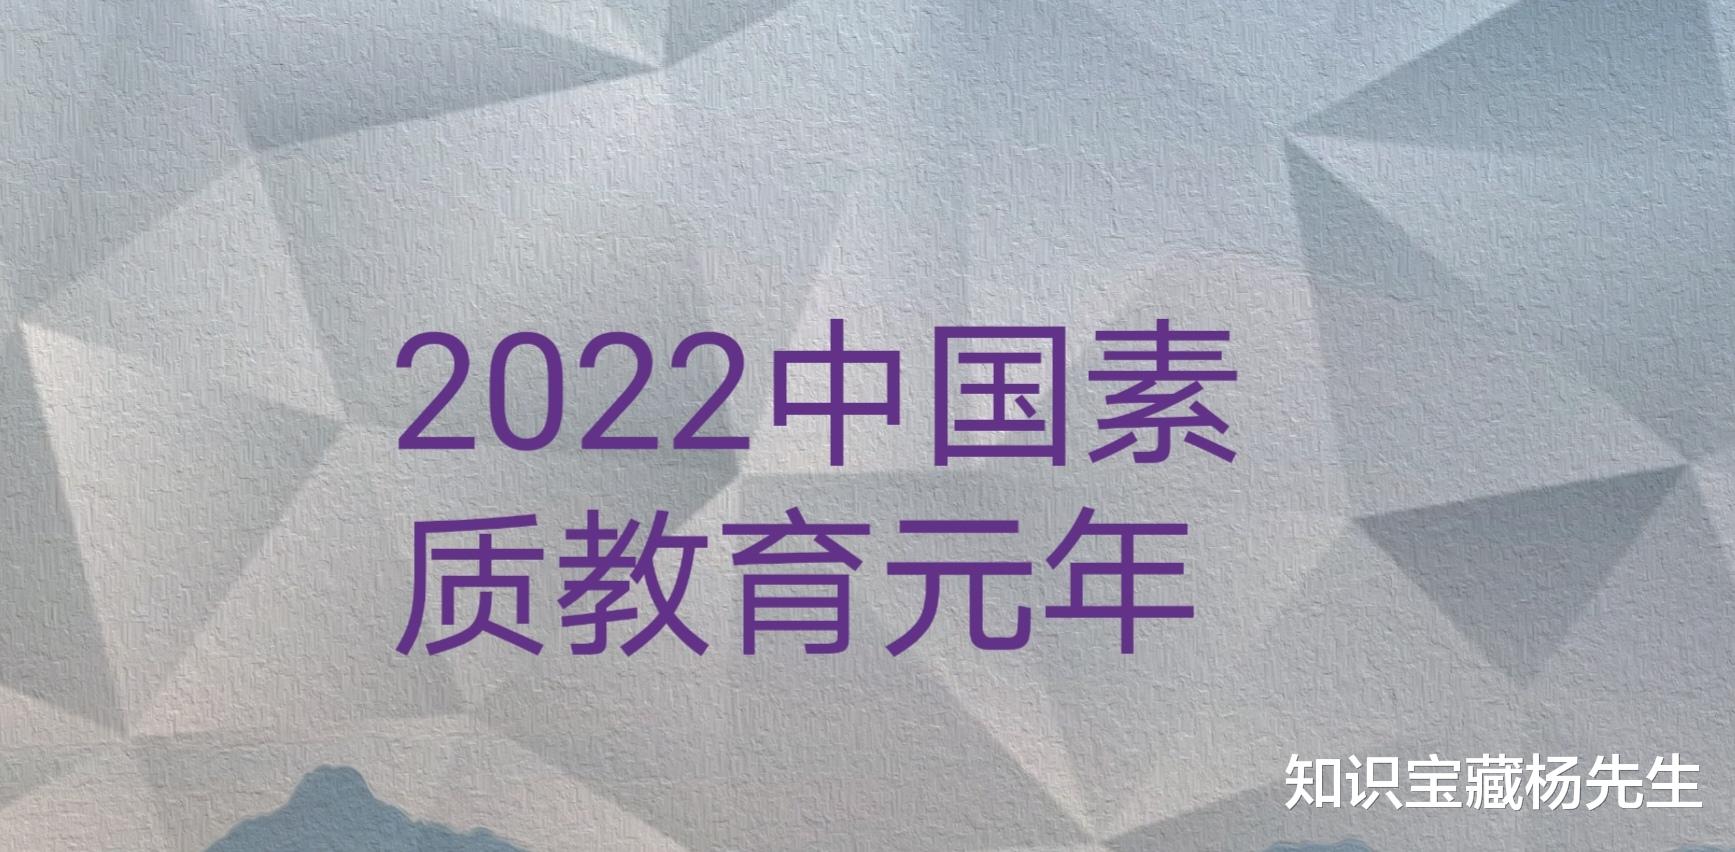 2022年9月, 中国教育真正迈入素质教育元年, 原因何在?